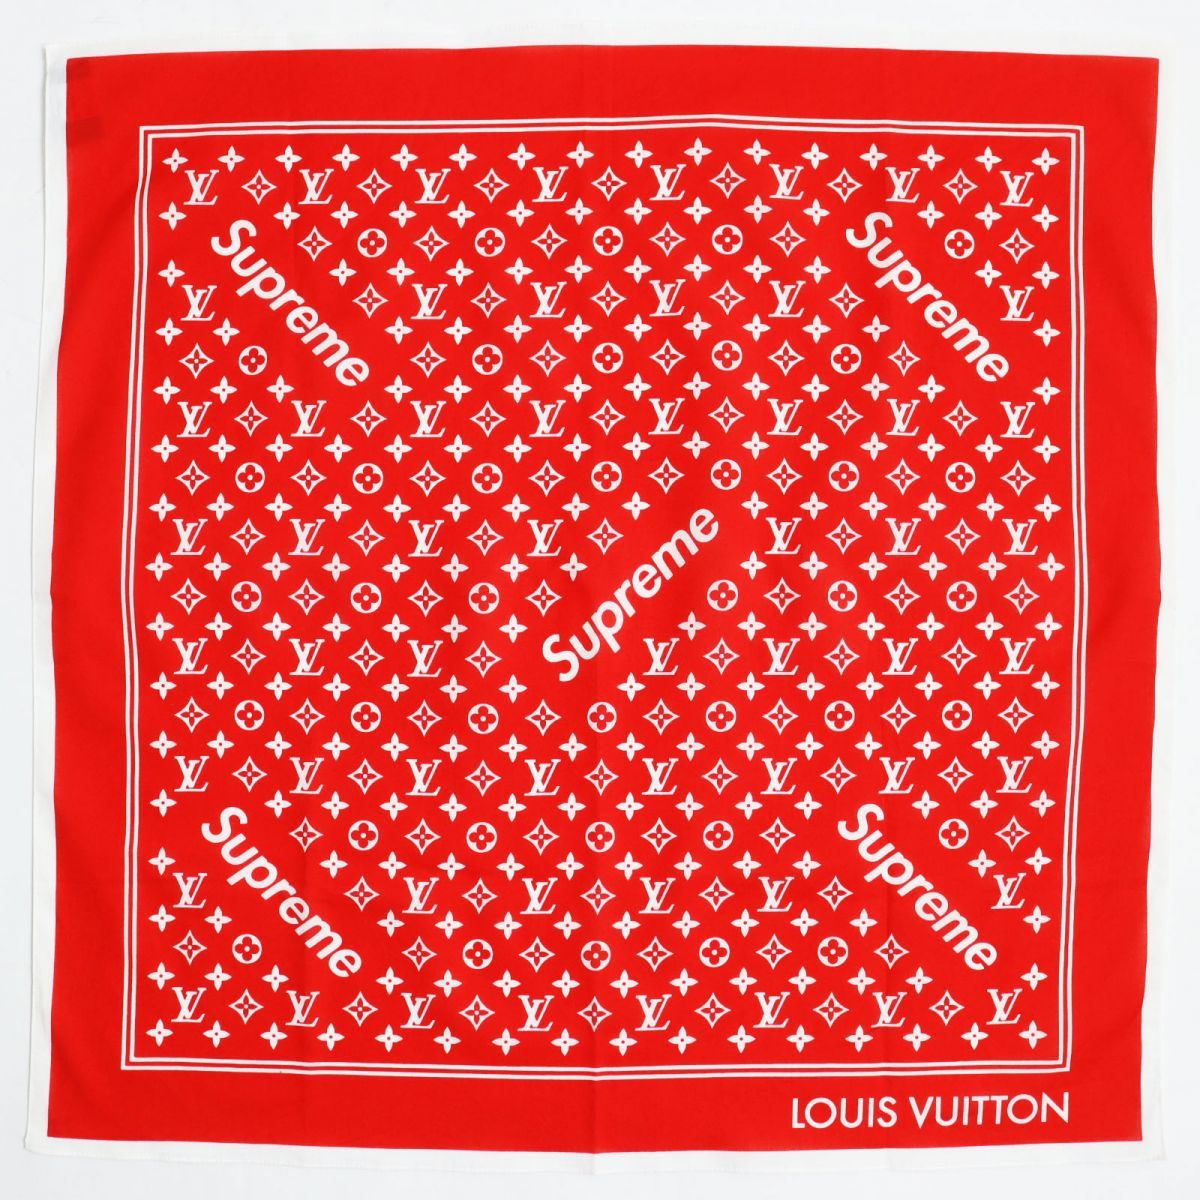 Buy Supreme Louis Vuitton SUPREME LOUISVUITTON Size: L 17AW LV